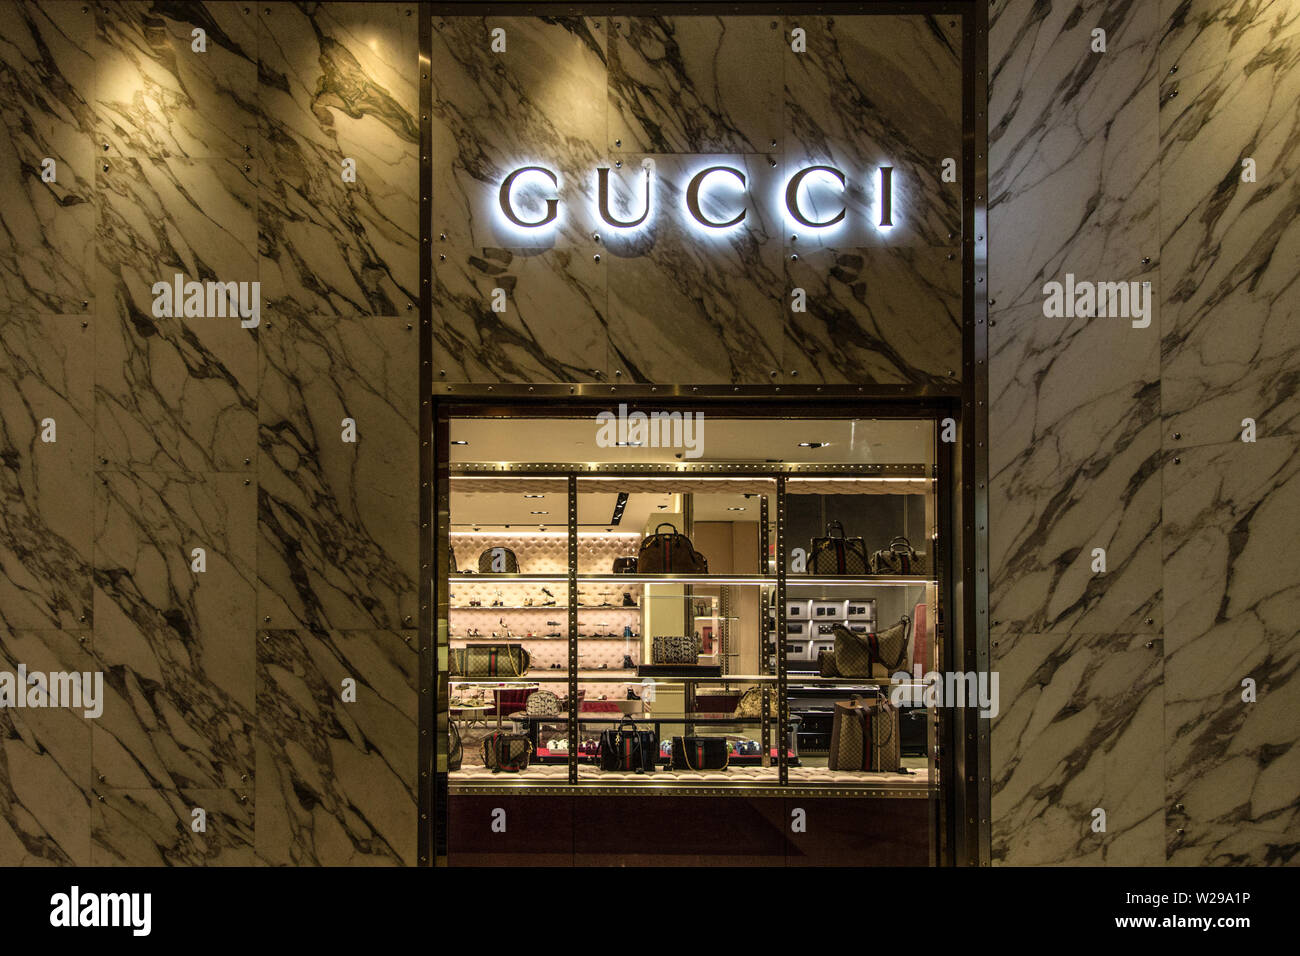 Gucci designer immagini e fotografie stock ad alta risoluzione - Alamy